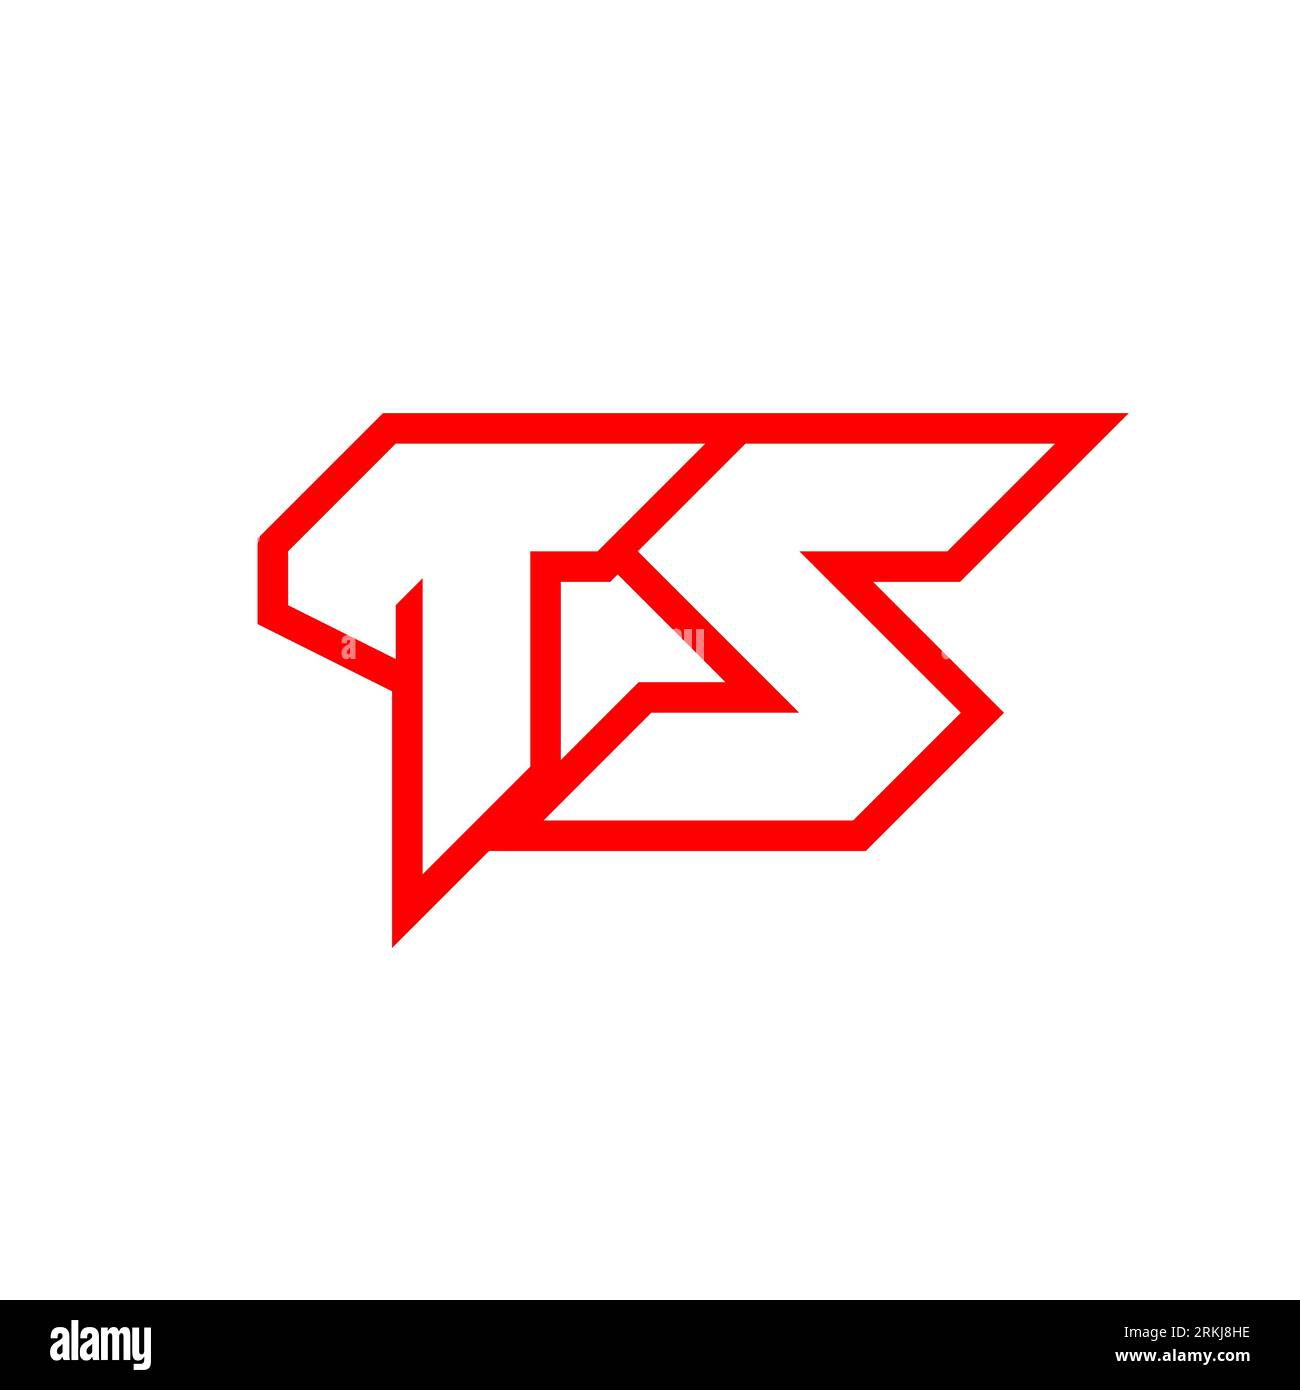 Letter S Gaming Logo - Turbologo Logo Maker